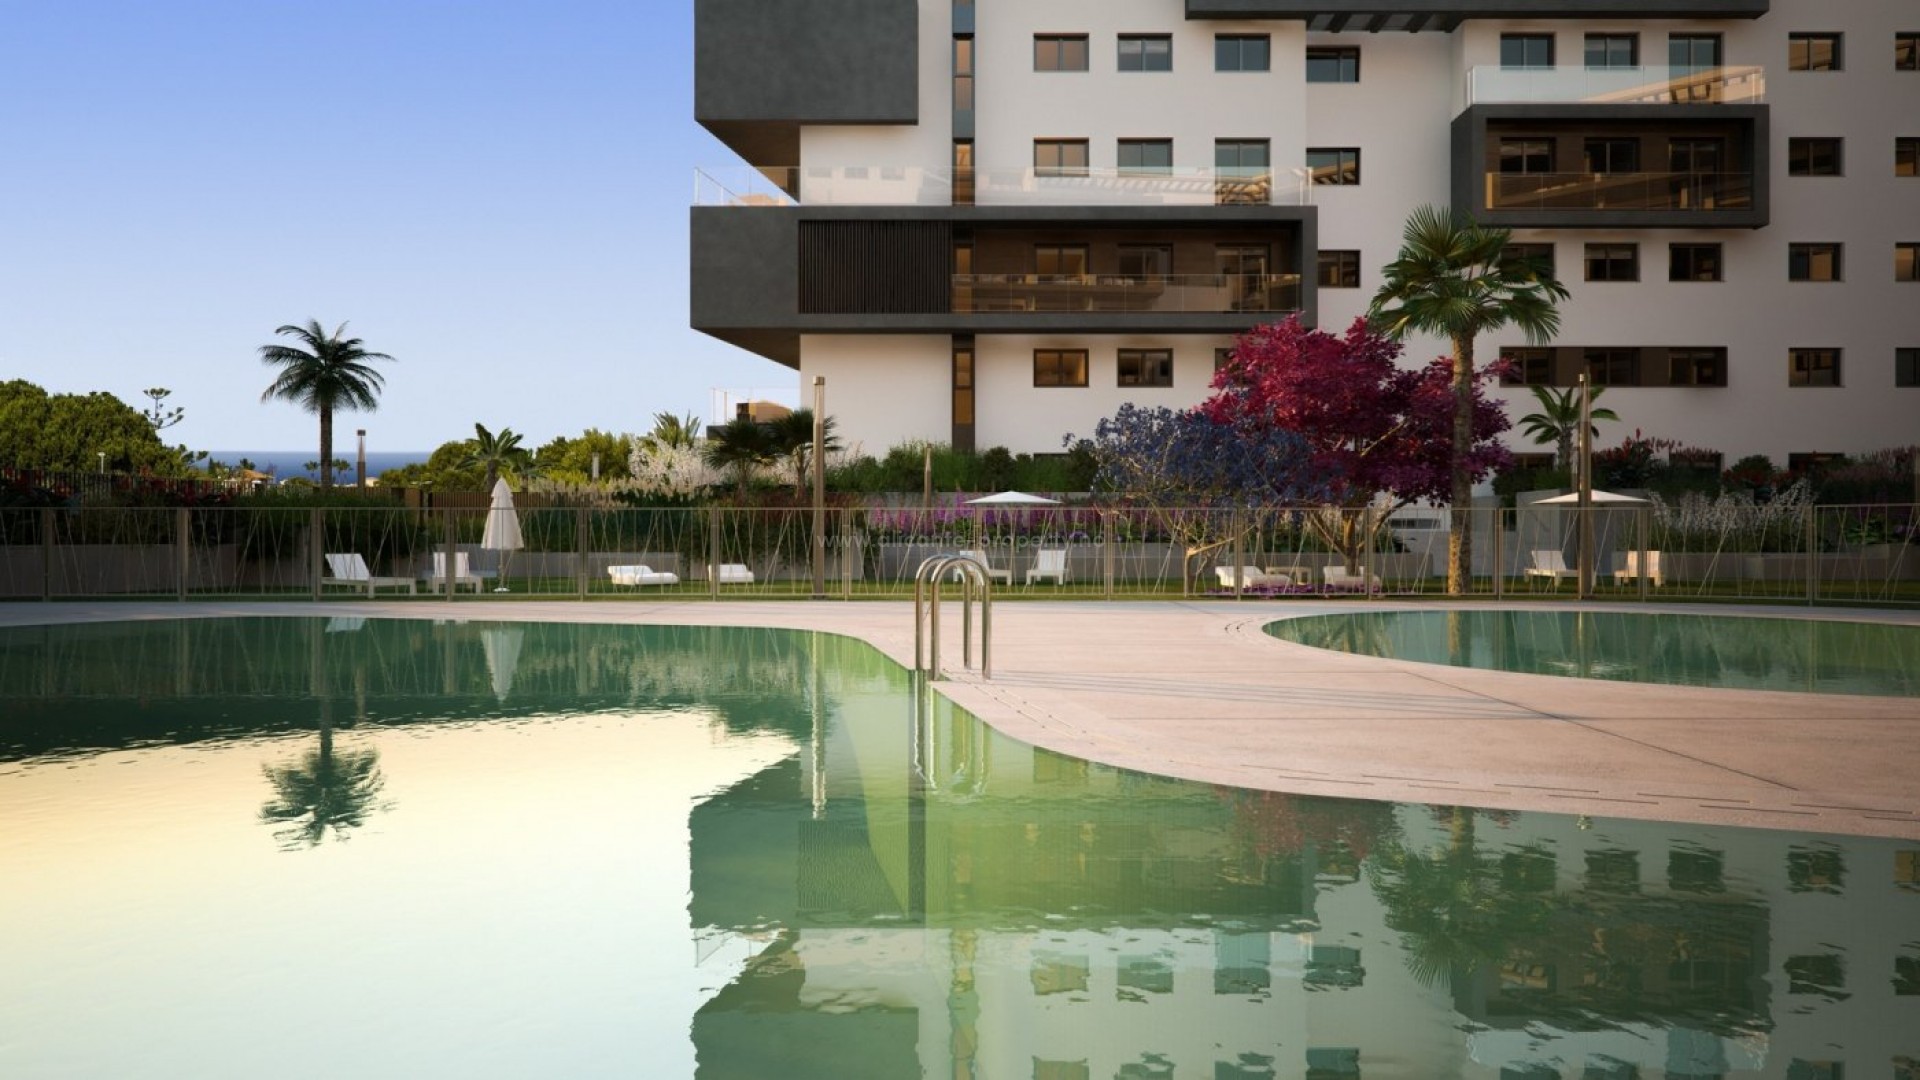 Luksus-bolig i Campoamor med havutsikt, nybygg, 2,3-roms leiligheter, basseng, solarium på taket eller hage. Veldig nær La Glea-stranden og marinaen.    